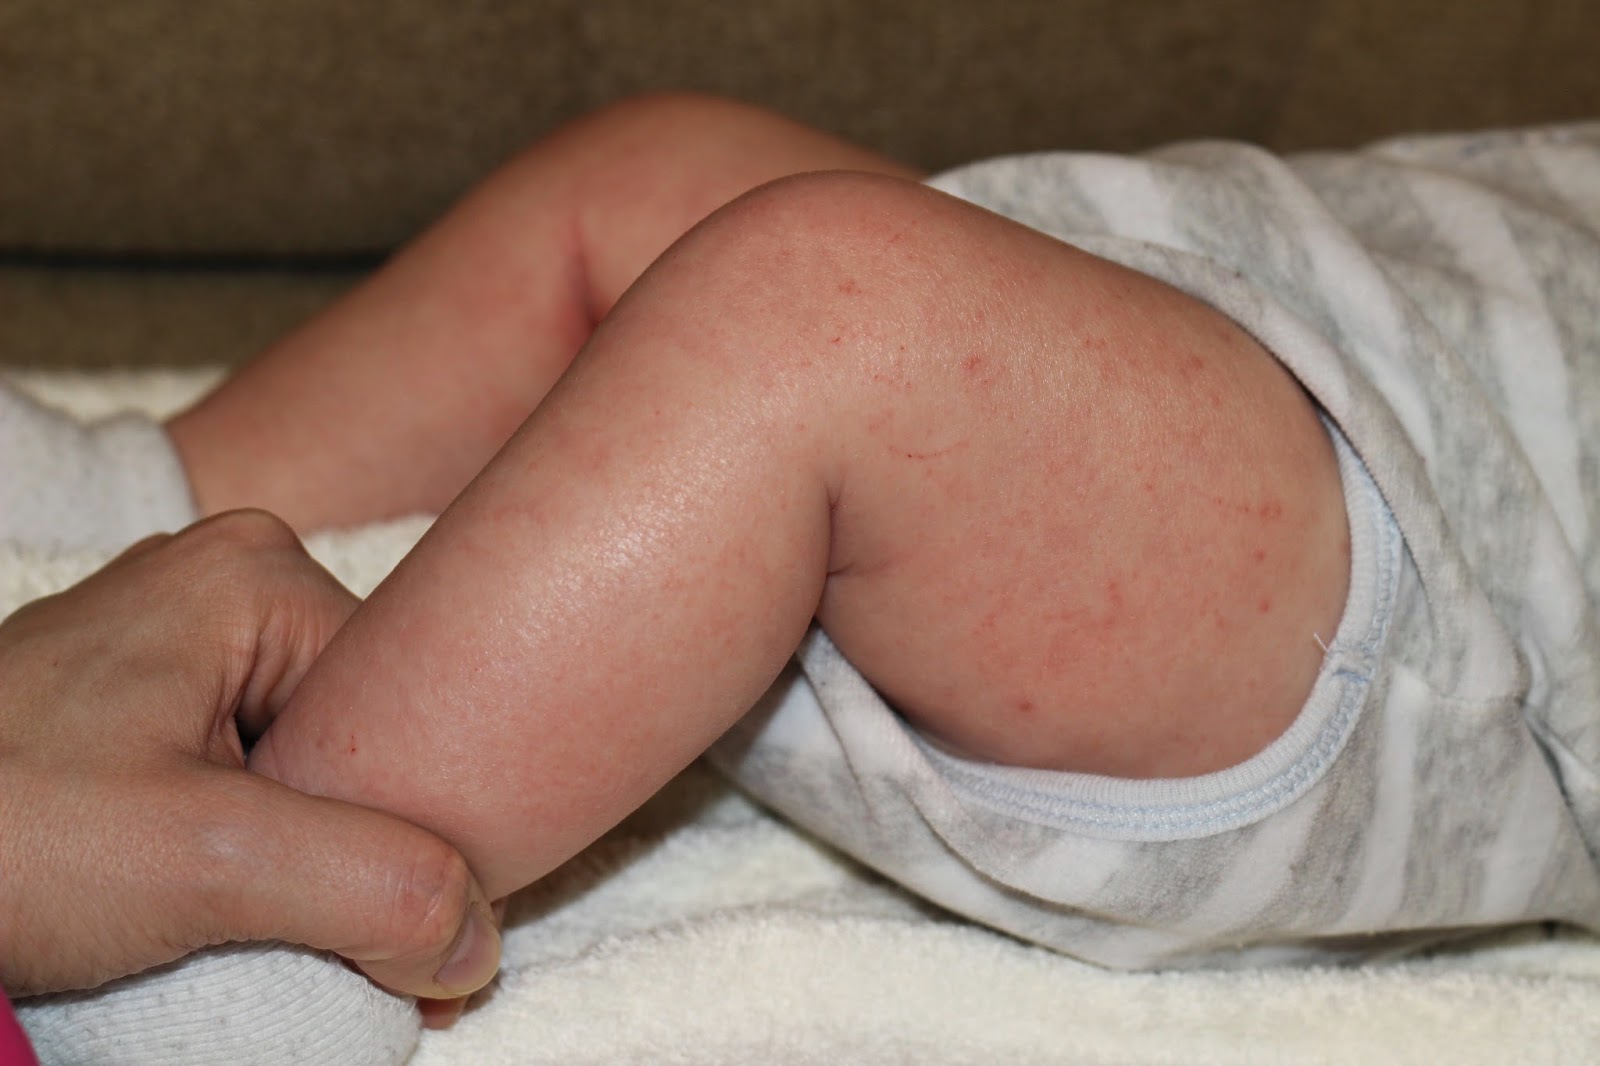 Атопический дерматит у детей: причины, симптомы, лечение, рекомендации.